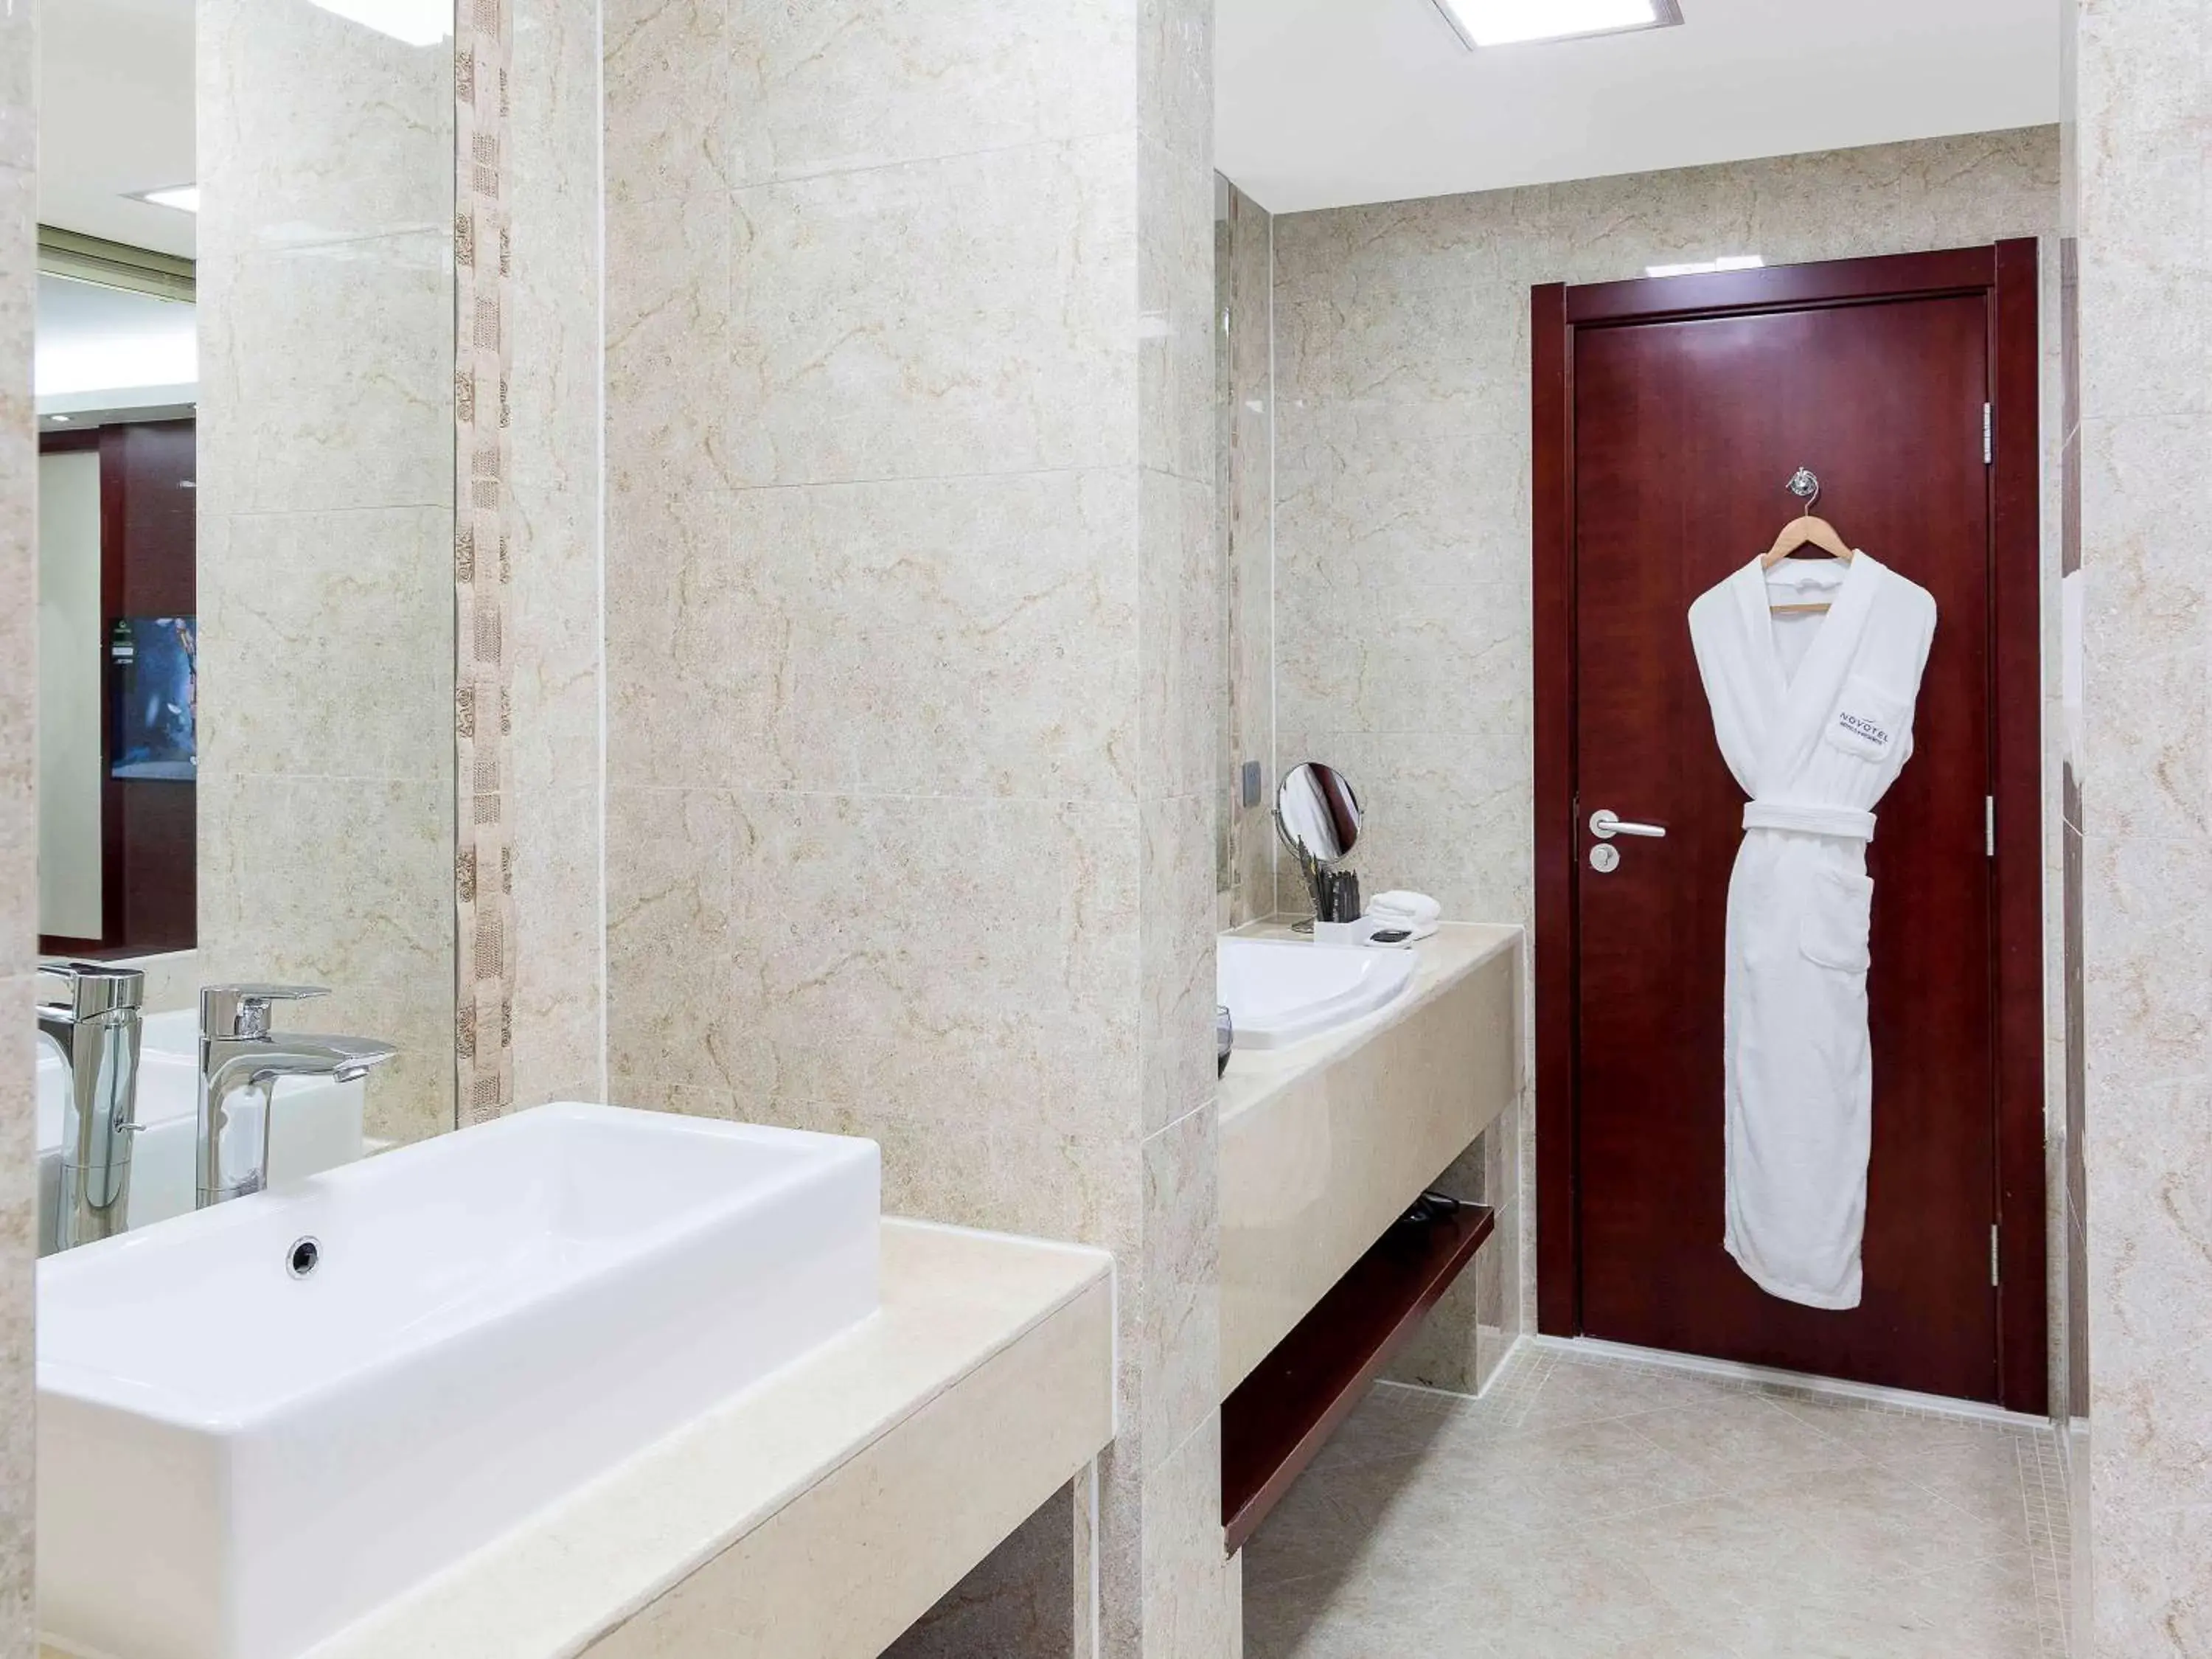 Photo of the whole room, Bathroom in Novotel Ulaanbaatar